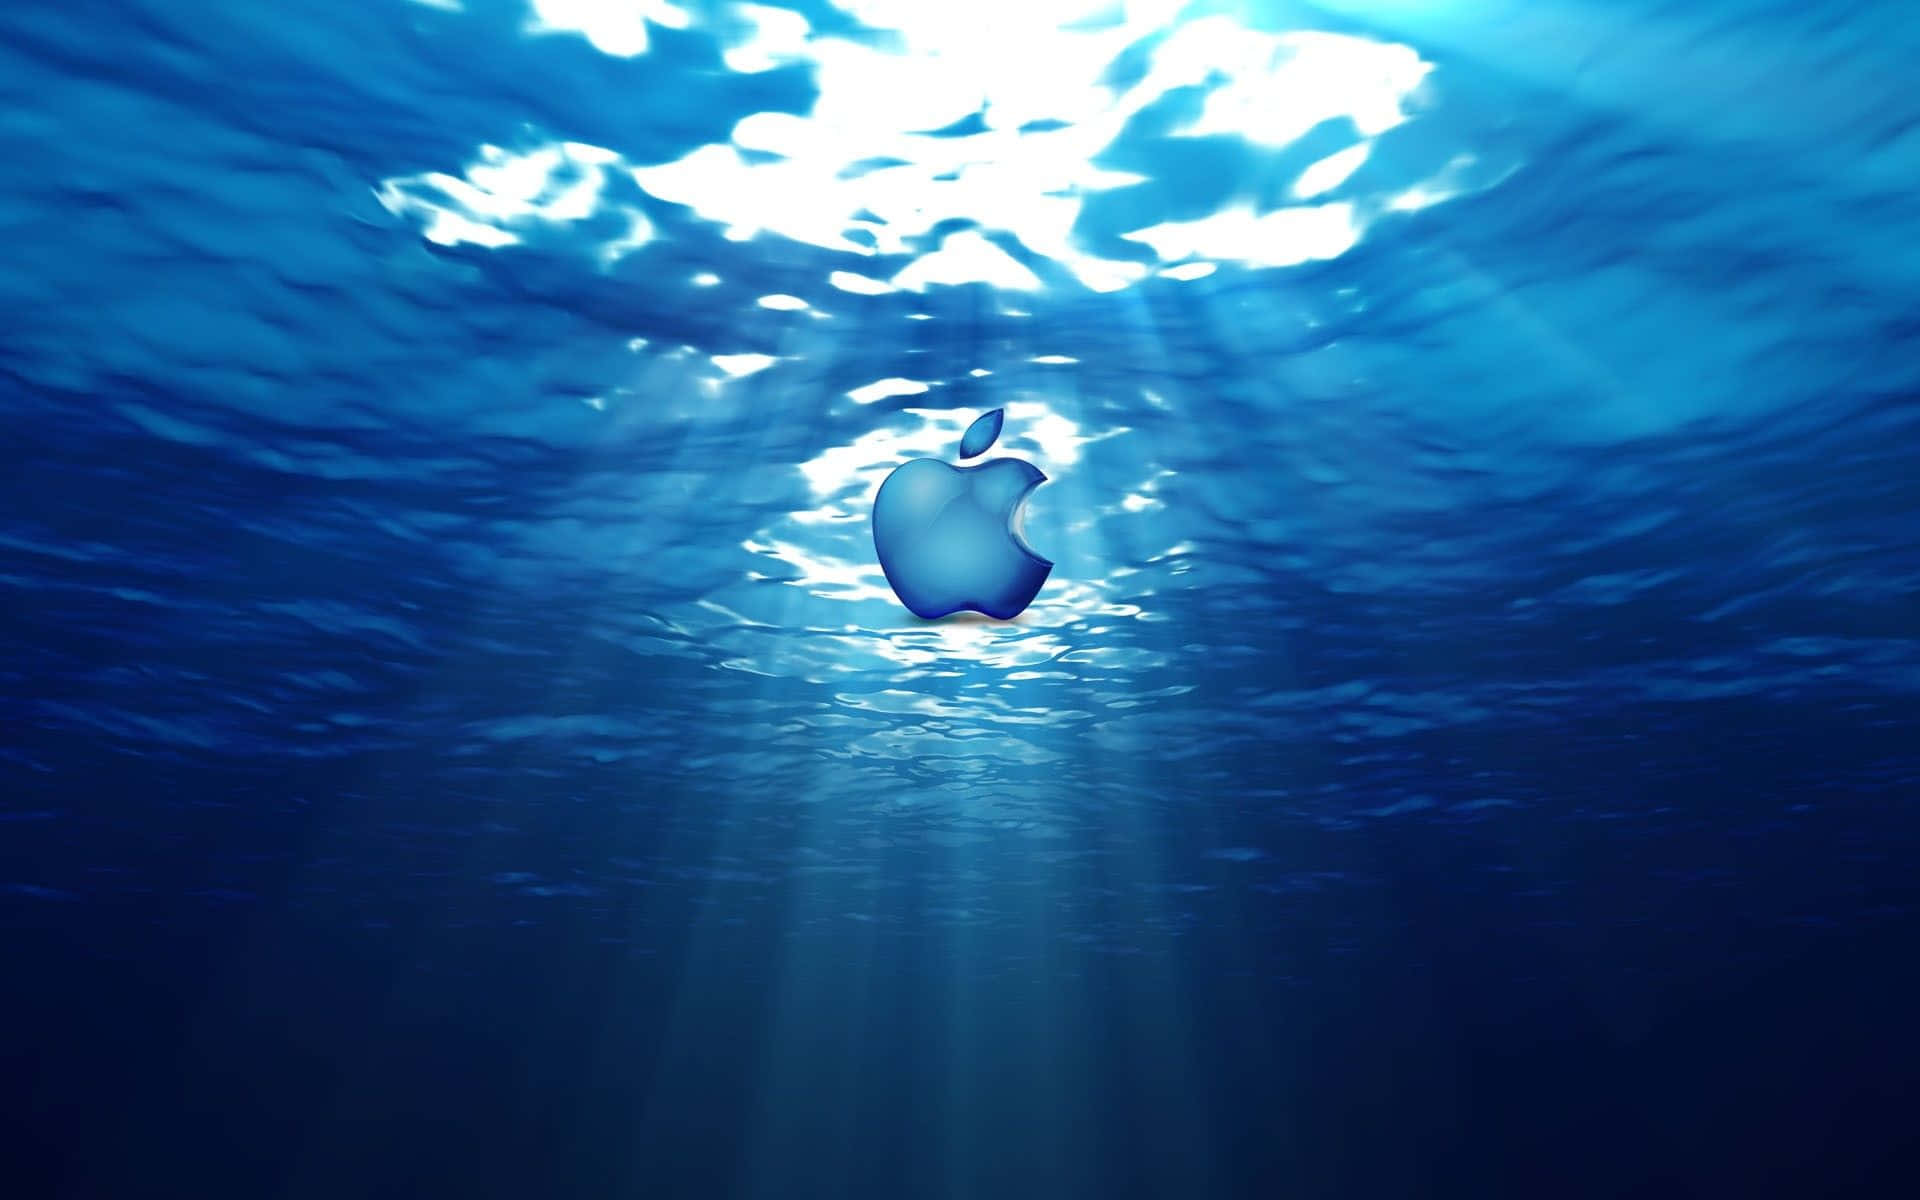 Fondode Pantalla Con El Logo De Apple Debajo Del Agua. Fondo de pantalla